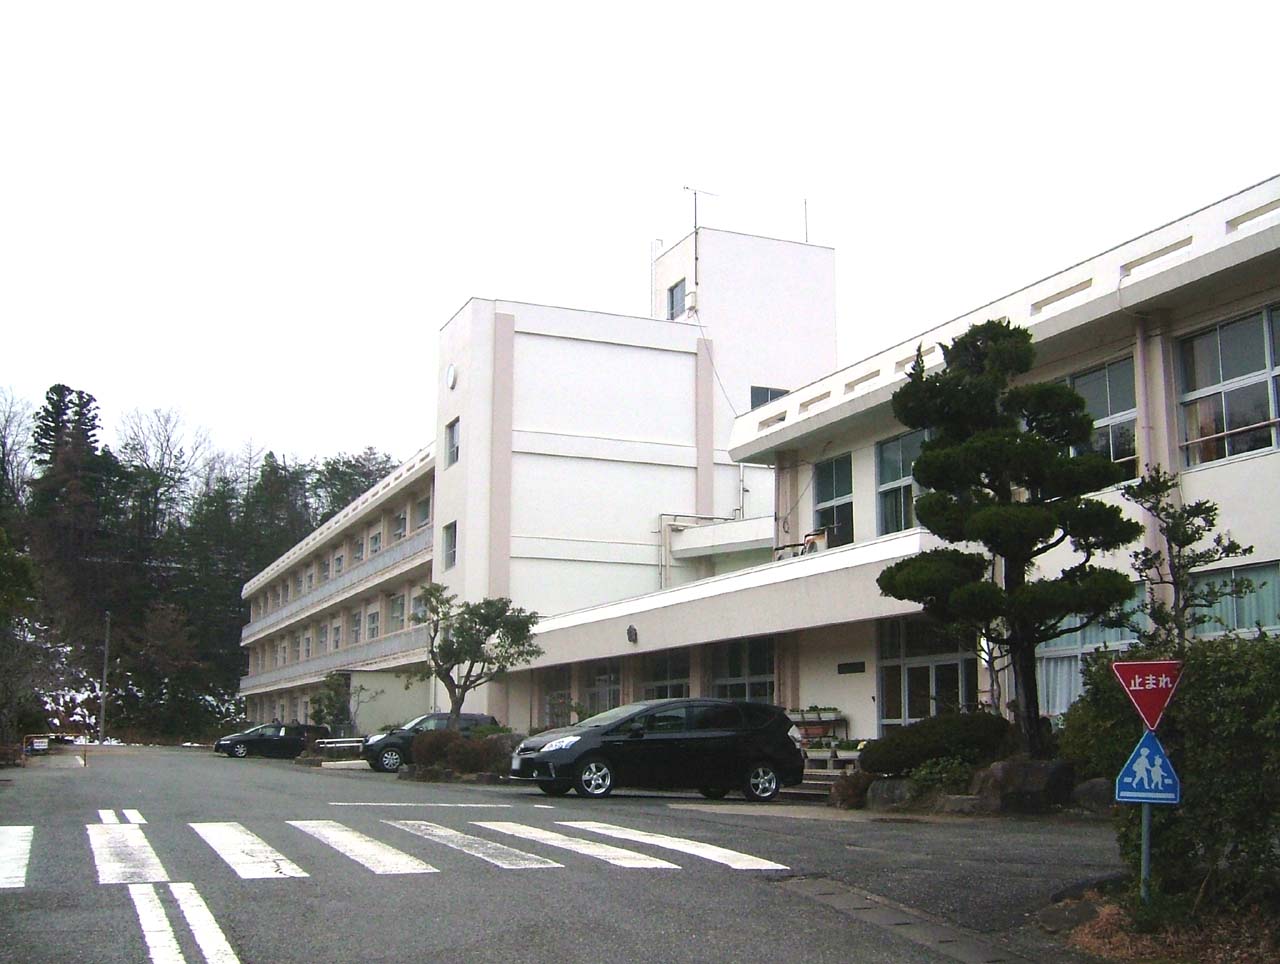 Primary school. Toyooka City Gosho to elementary school (elementary school) 1253m